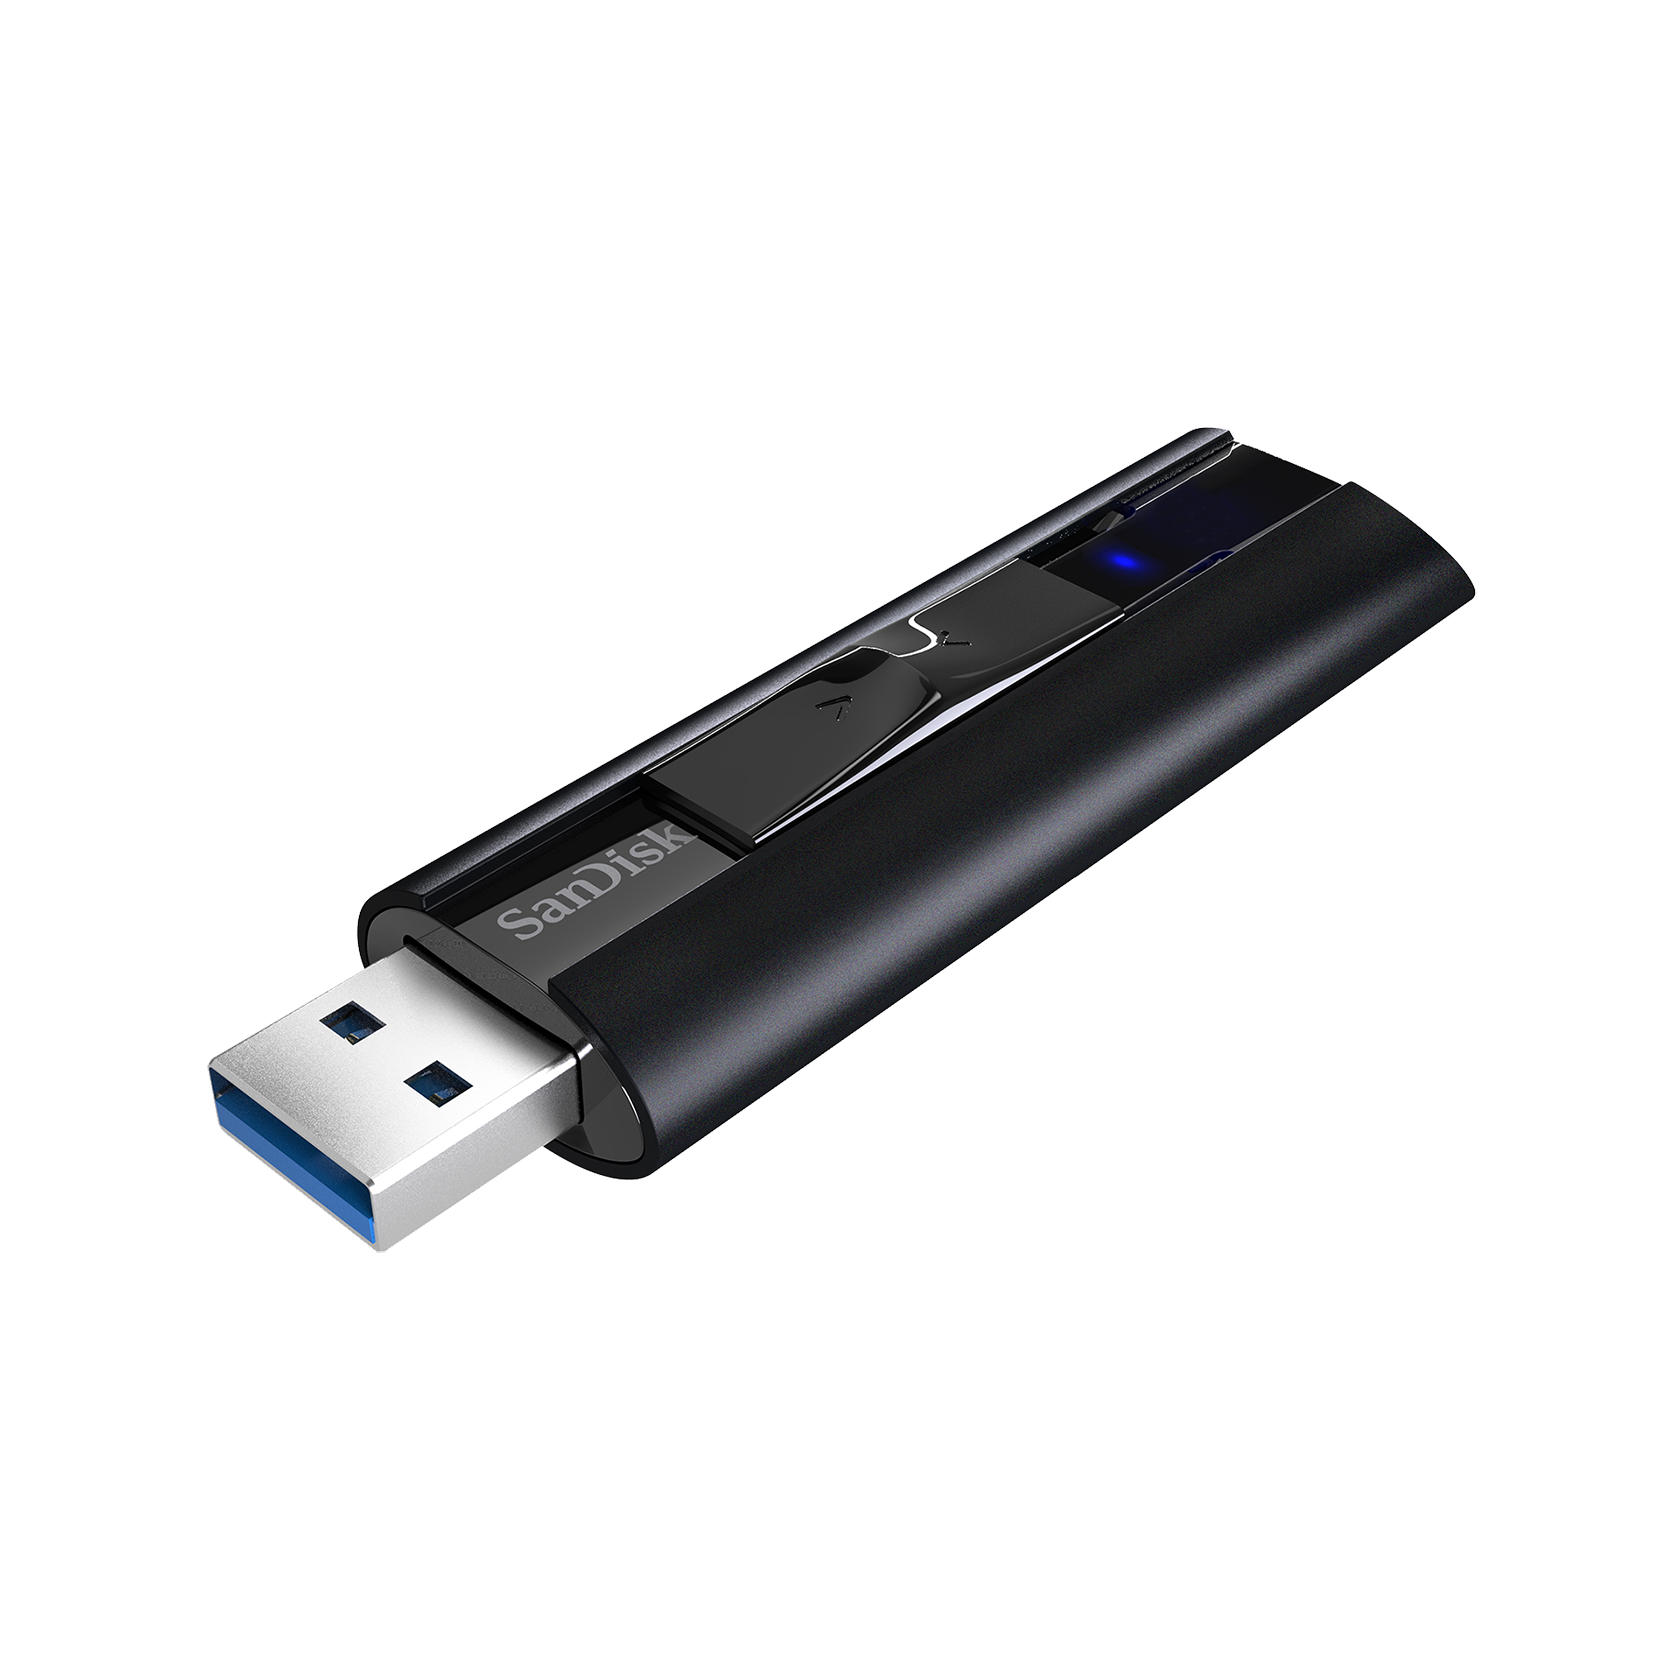 [USB 저장장치] Sandisk Extreme PRO USB 3.2 플래시 드라이브 CZ880 128GB